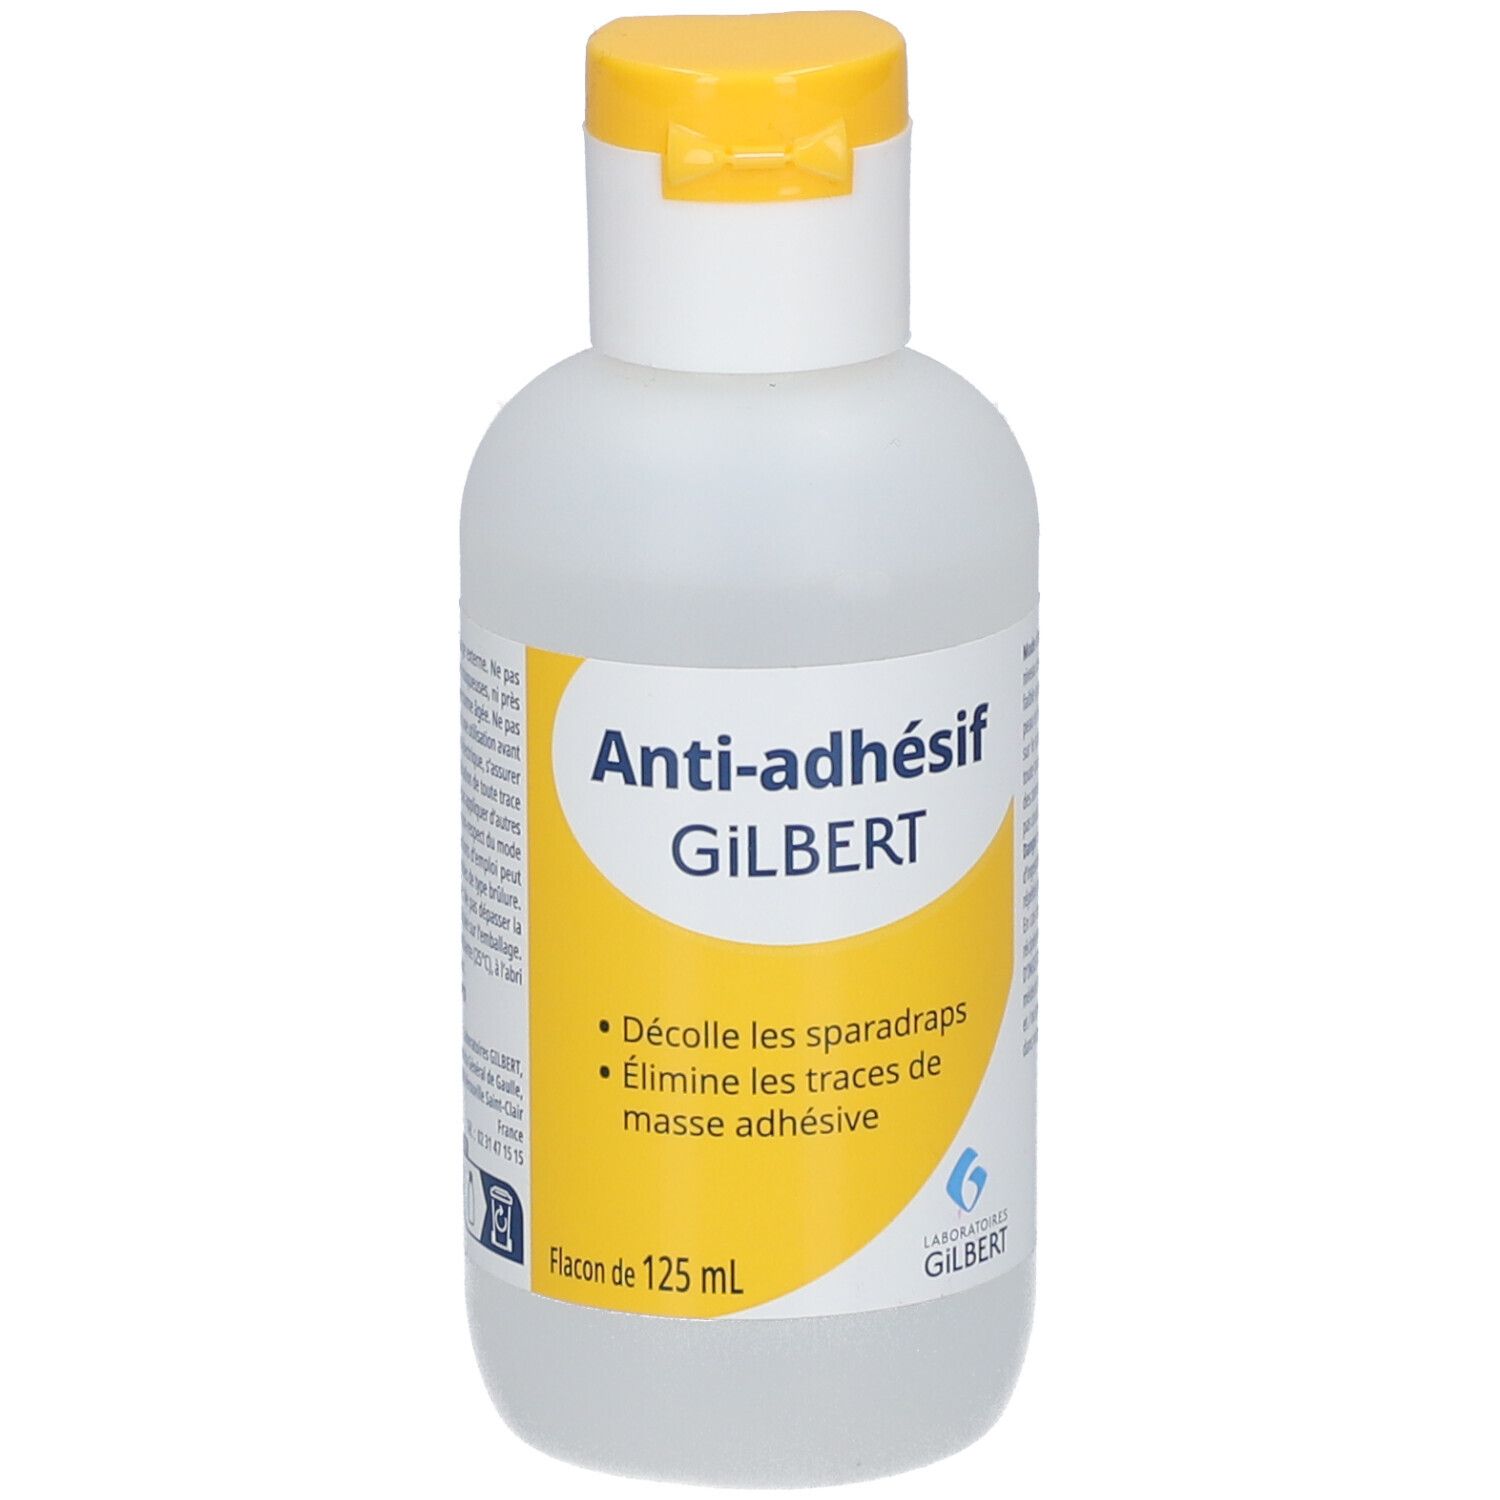 Gilbert Anti-adhesif : : Hygiène et Santé